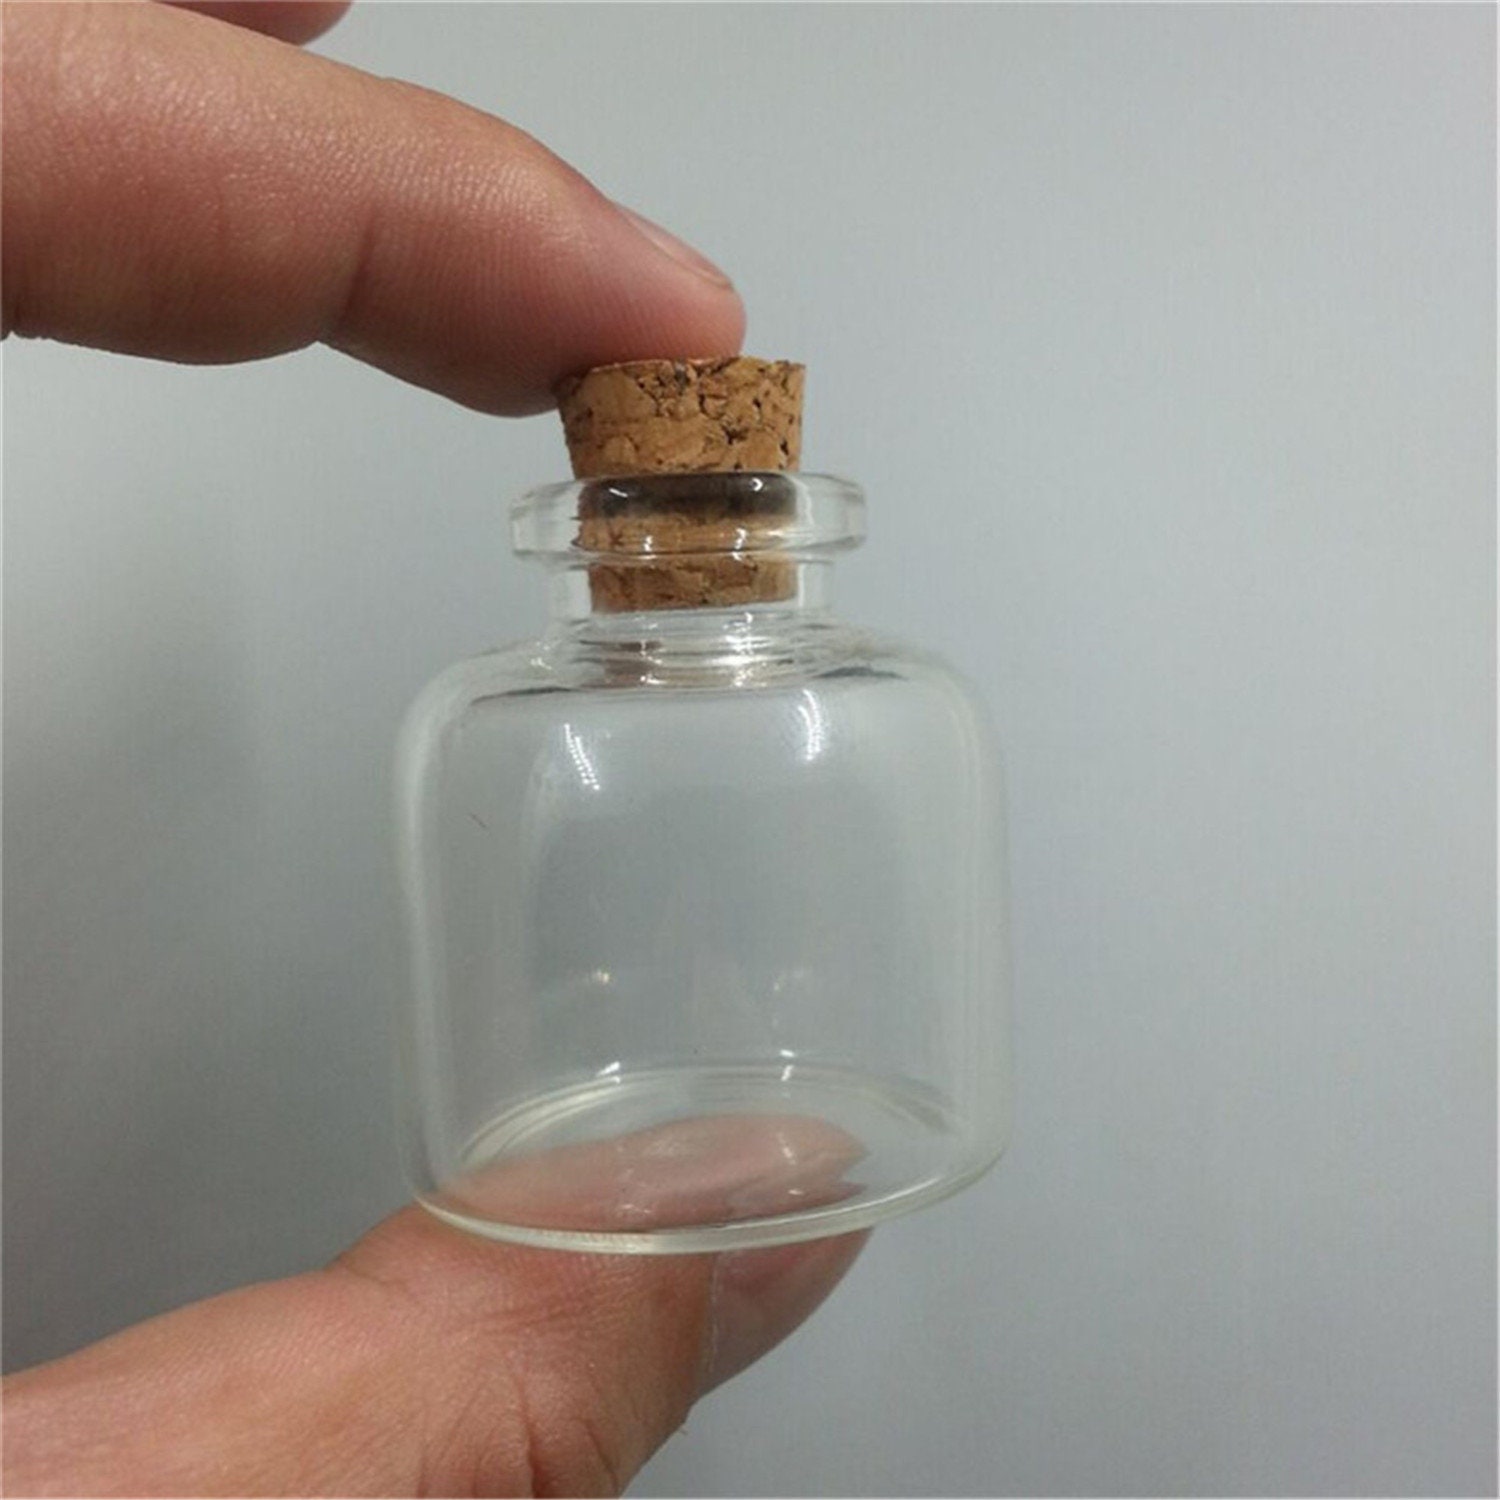 Mini botellas de vidrio con corcho, paquete de 12 (estrella de 3 pulgadas)